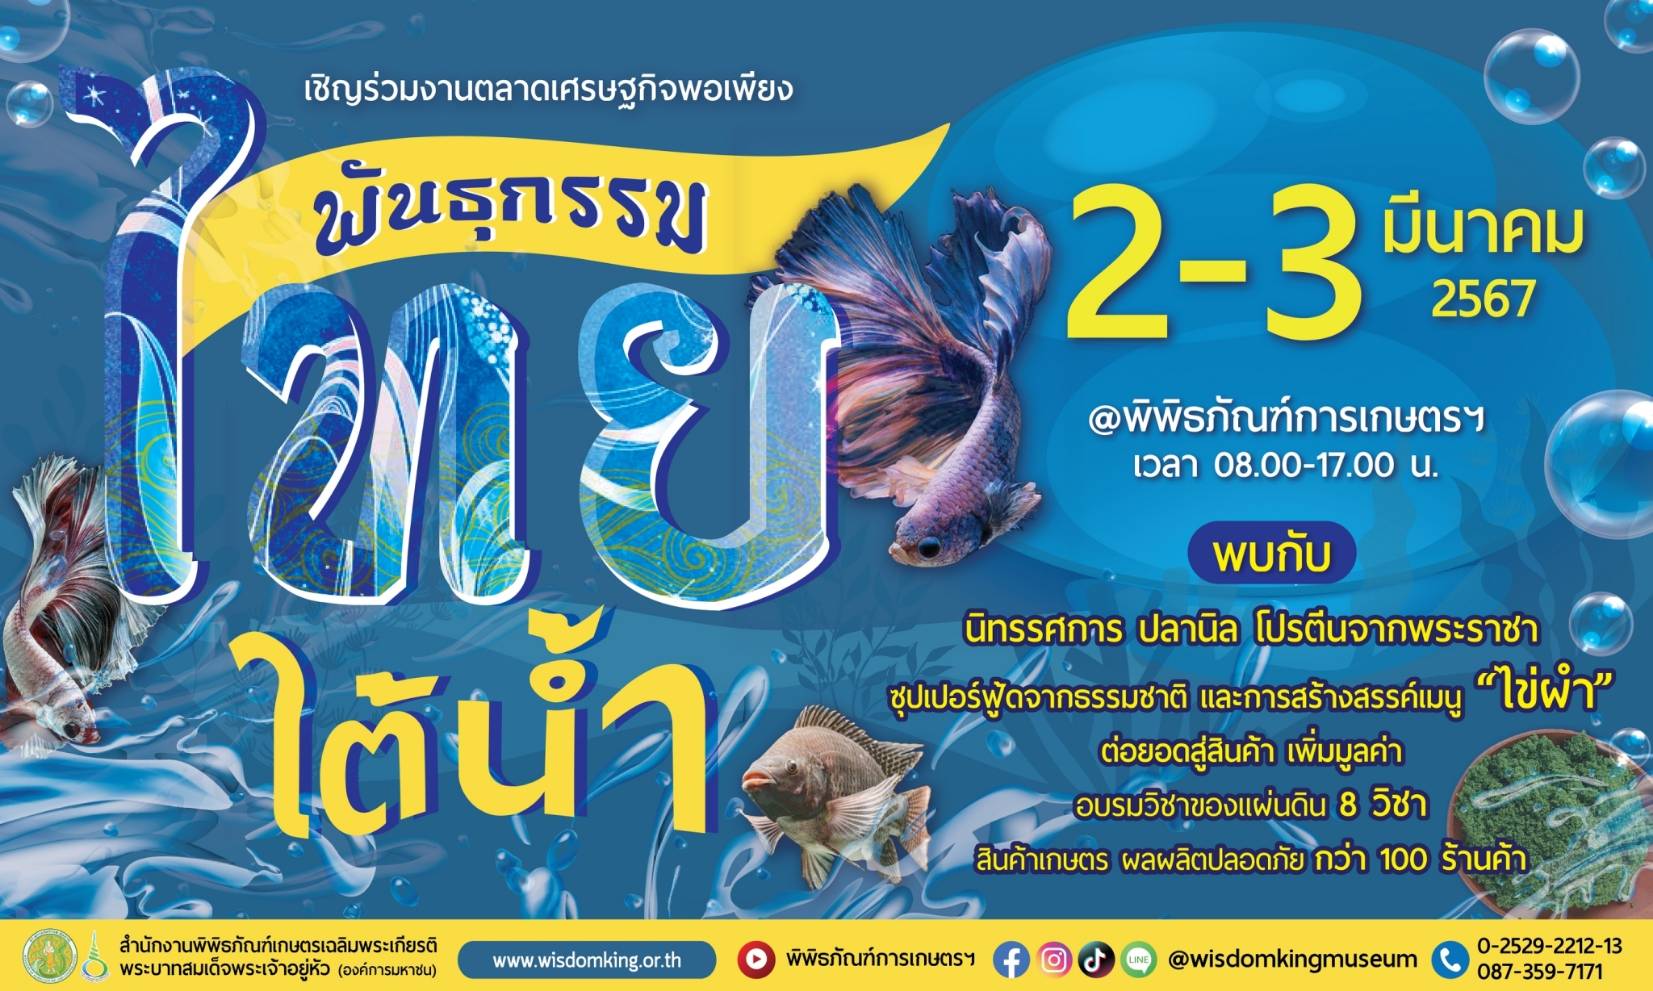 ปทุมธานี-พิพิธภัณฑ์การเกษตรฯ ชวนเที่ยวงานตลาดเศรษฐกิจพอเพียงพันธุกรรมไทยใต้น้ำ